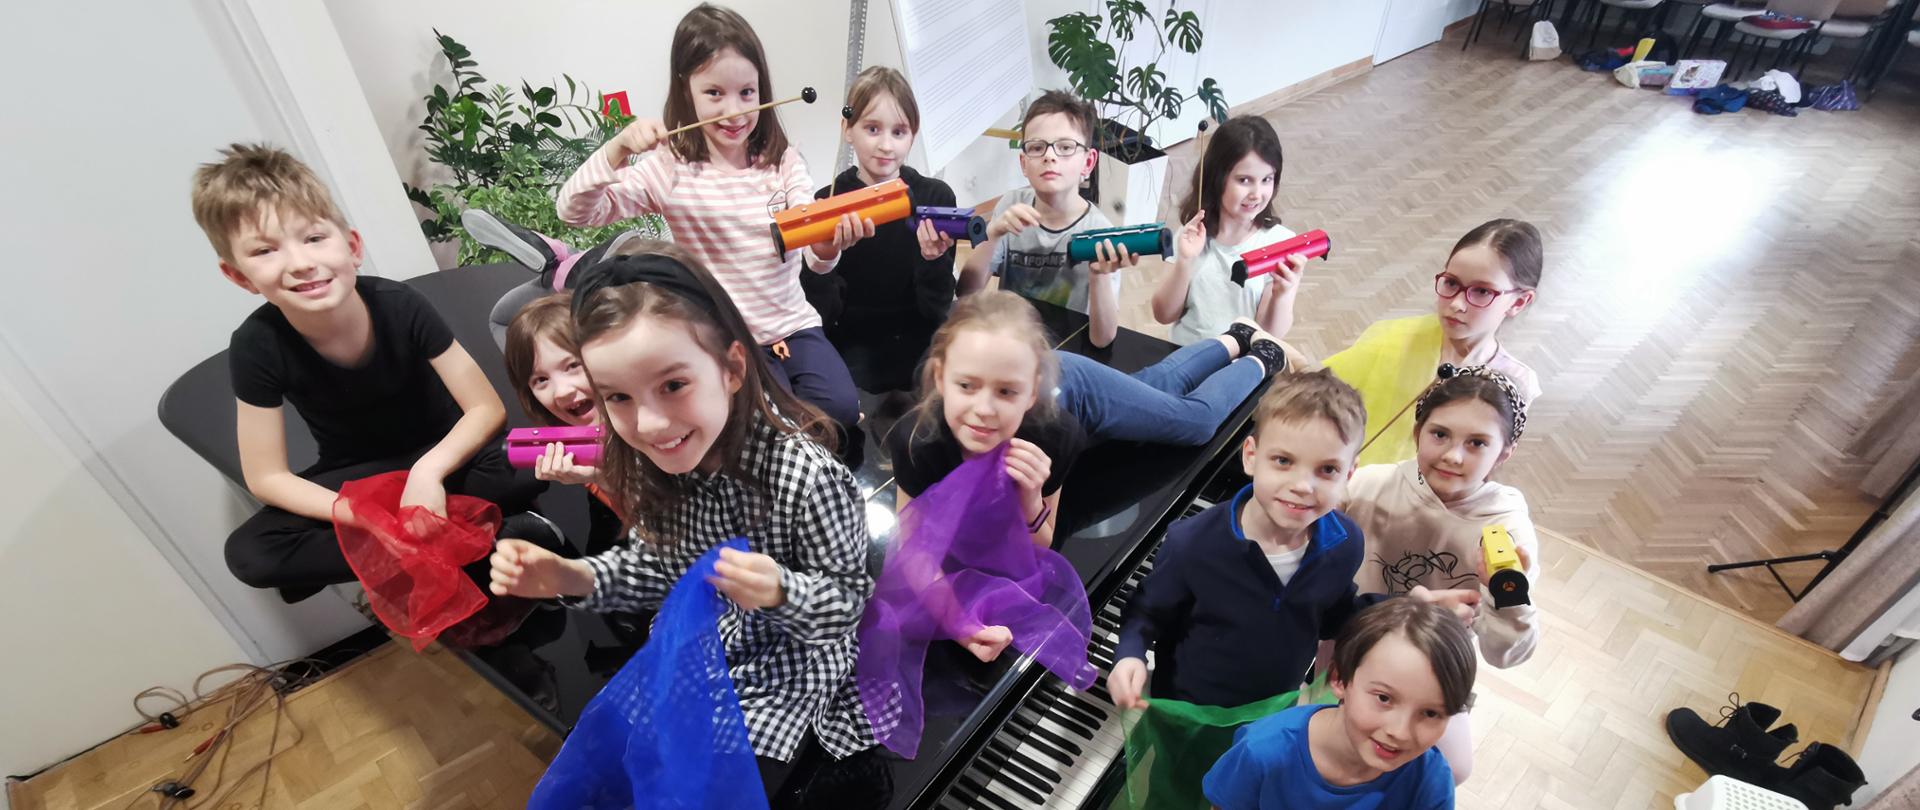 Zdjęcie grupy uczniów z instrumentami perkusyjnymi i kolorowymi chustami.